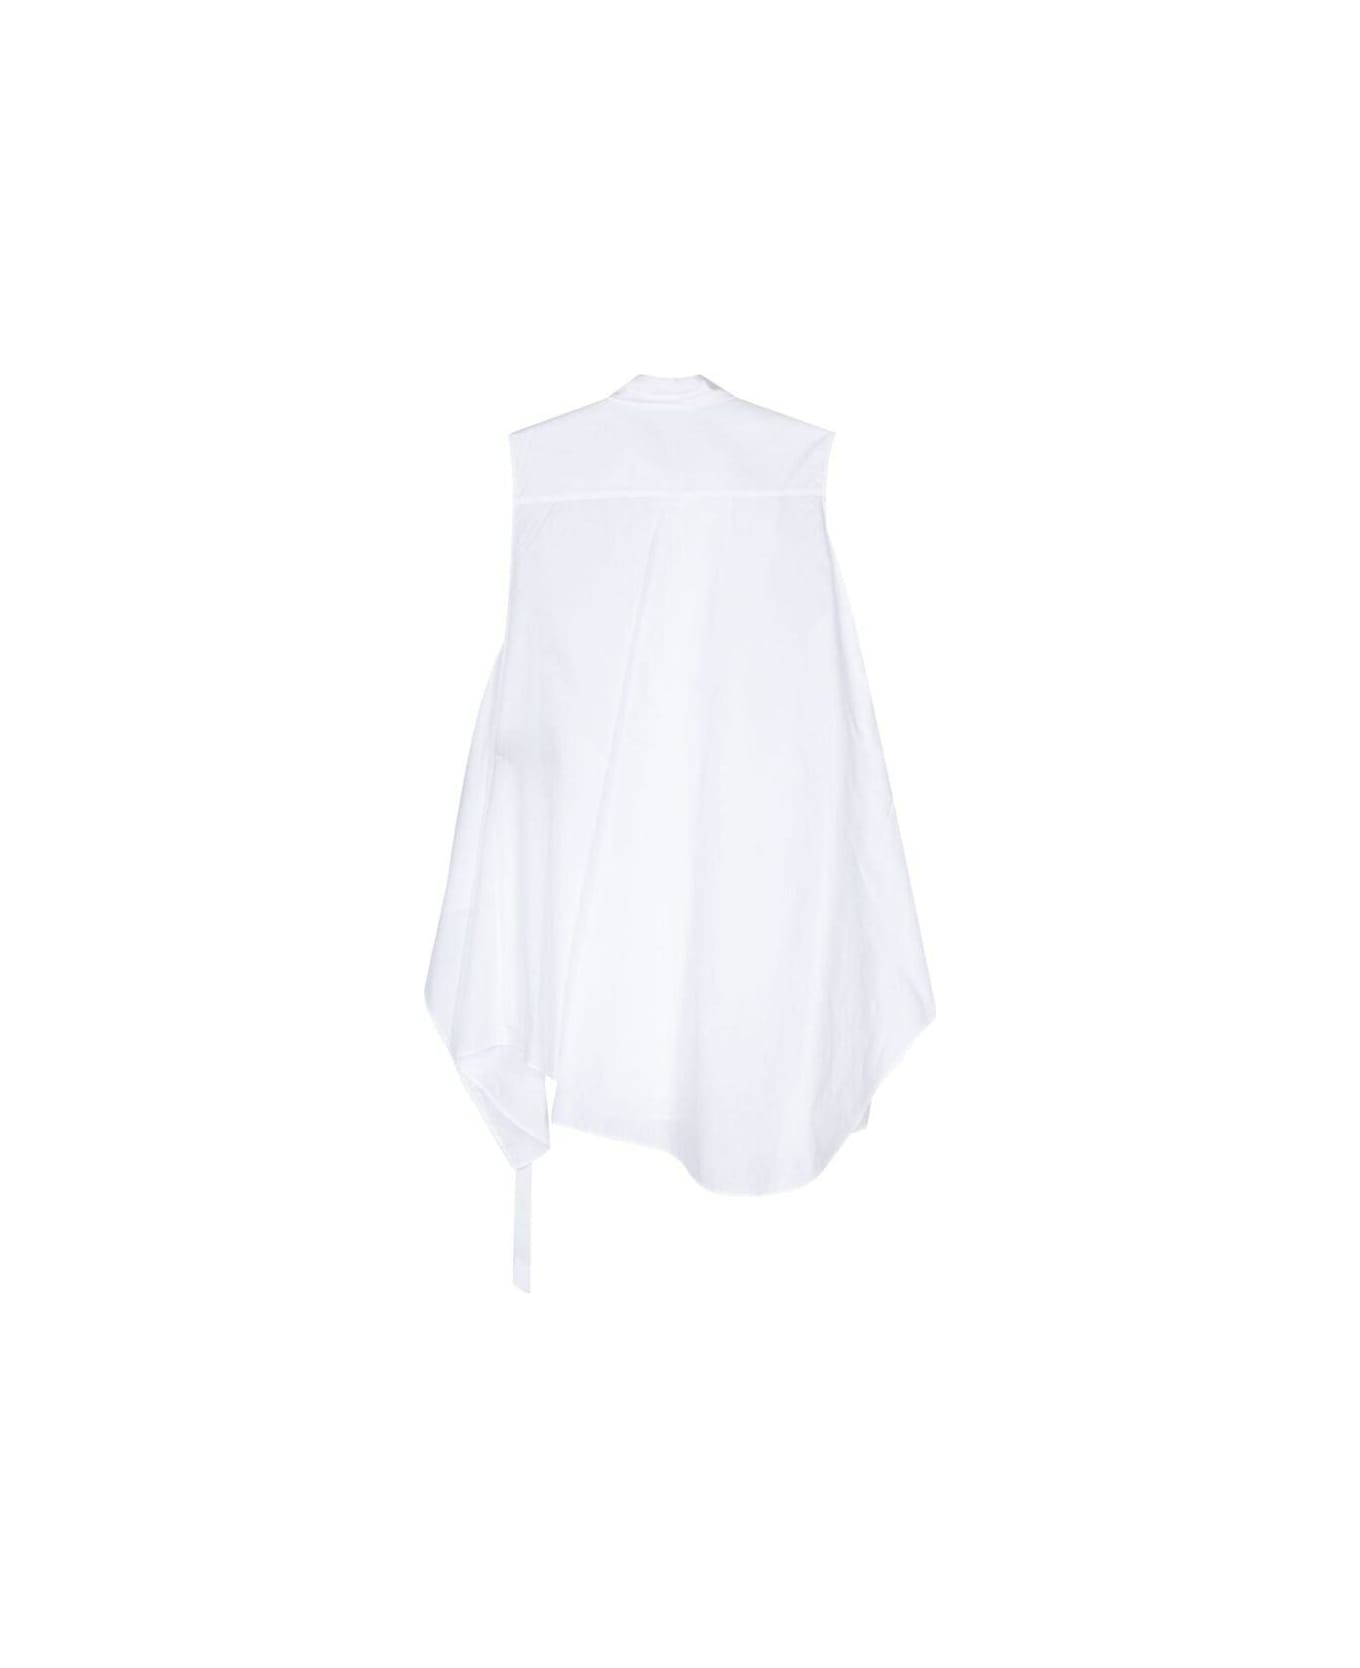 Ann Demeulemeester Sleeveless Shirt - WHITE シャツ